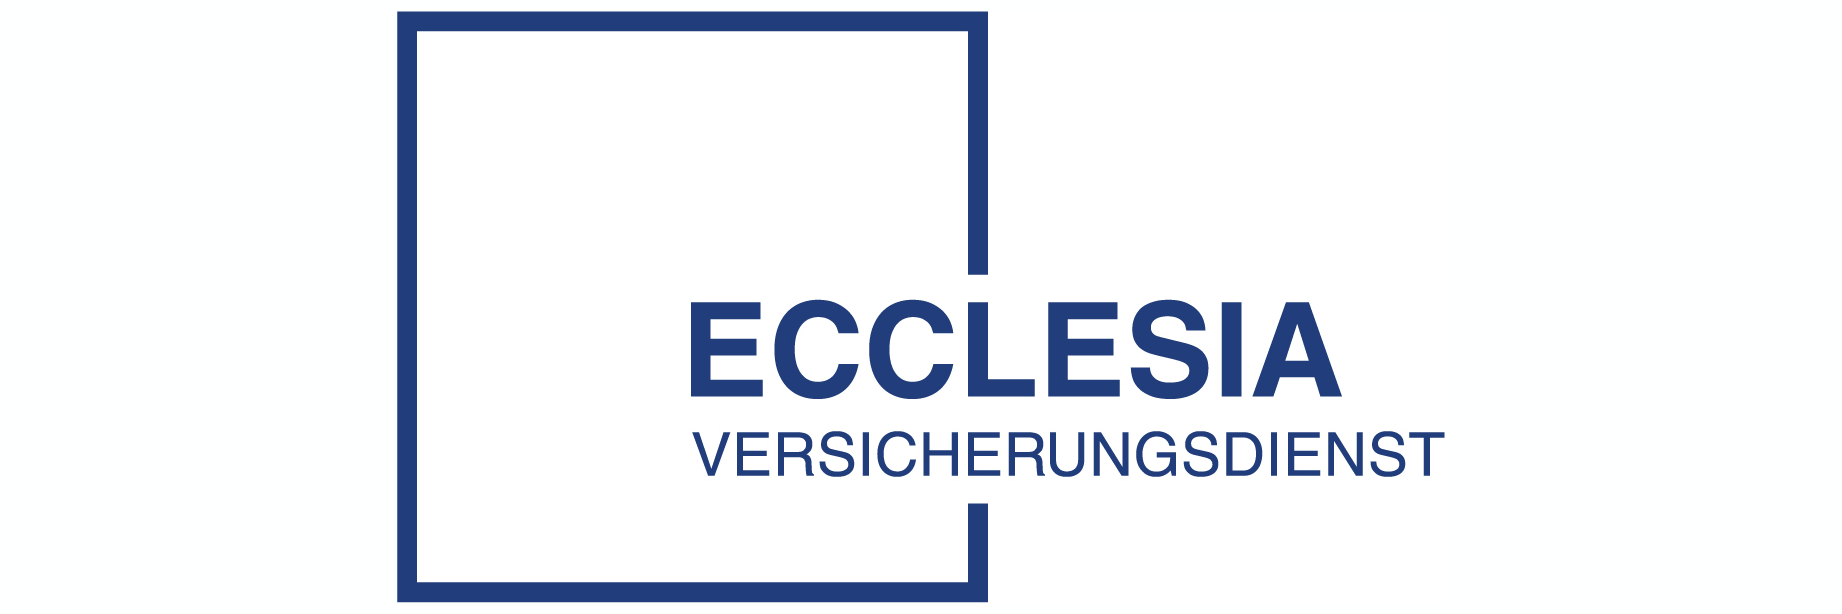 Ecclesia Versicherungsdienst GmbH 